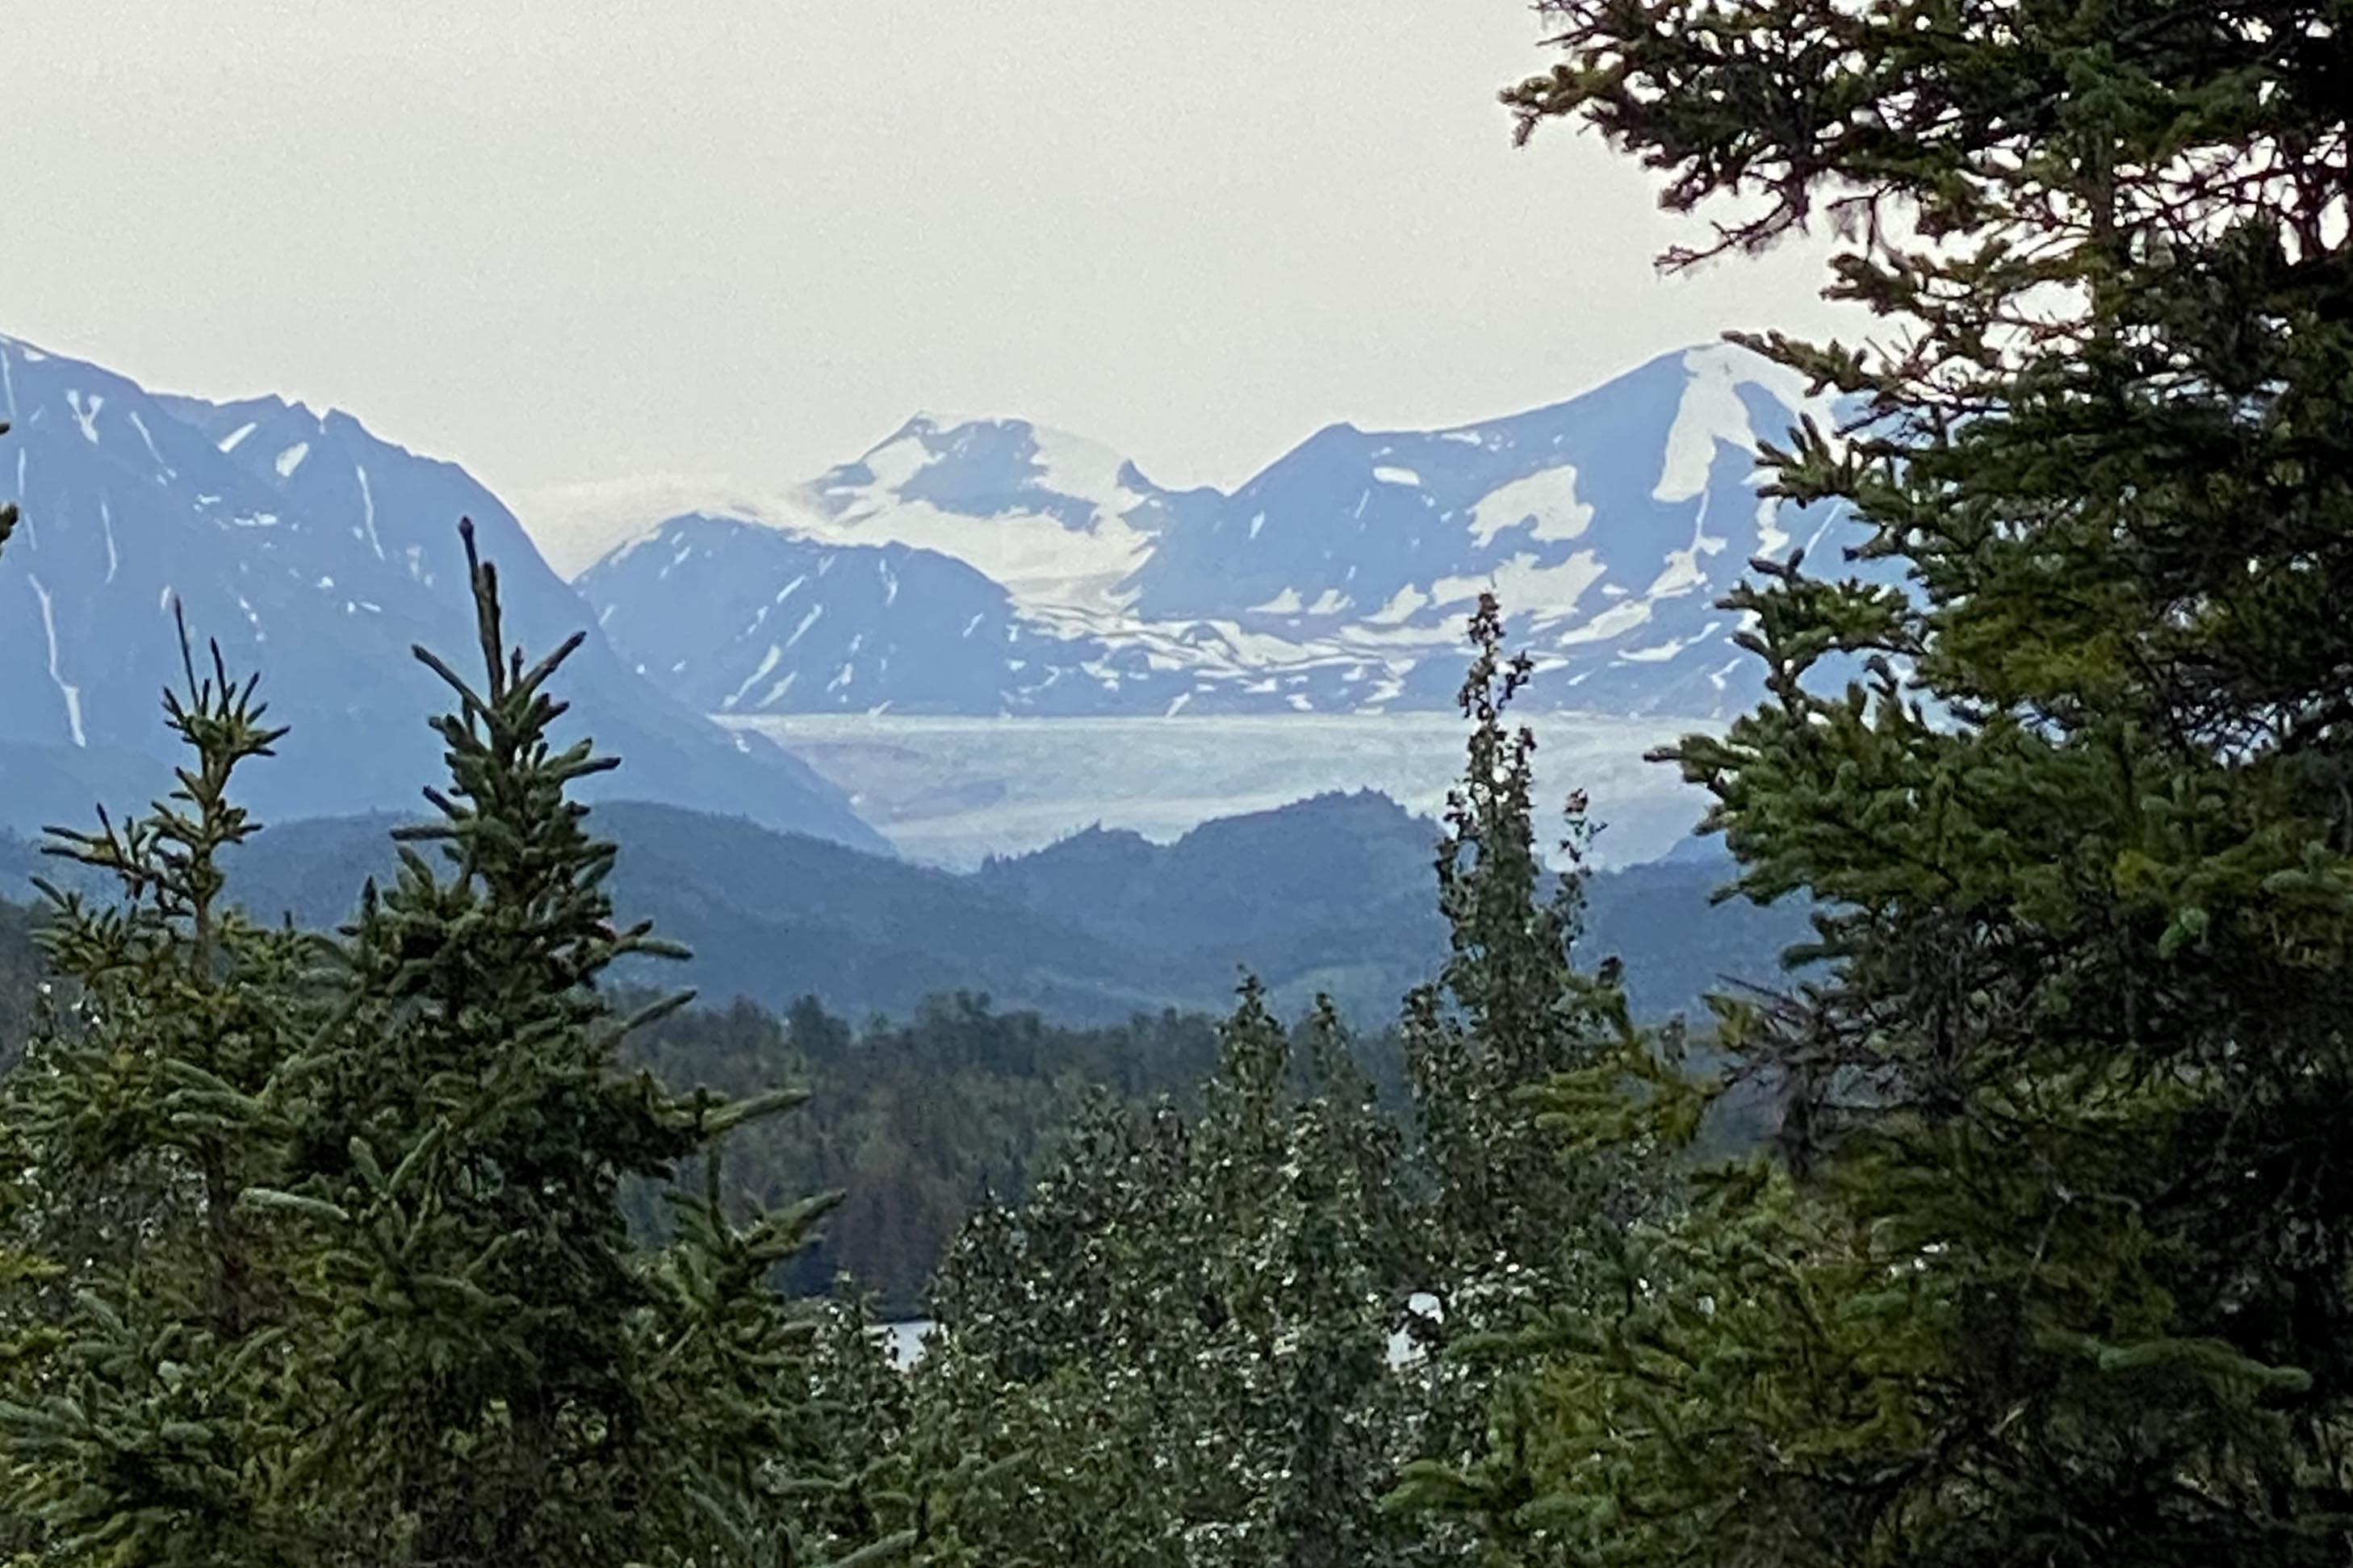 A glimpse of the Skilak Glacier